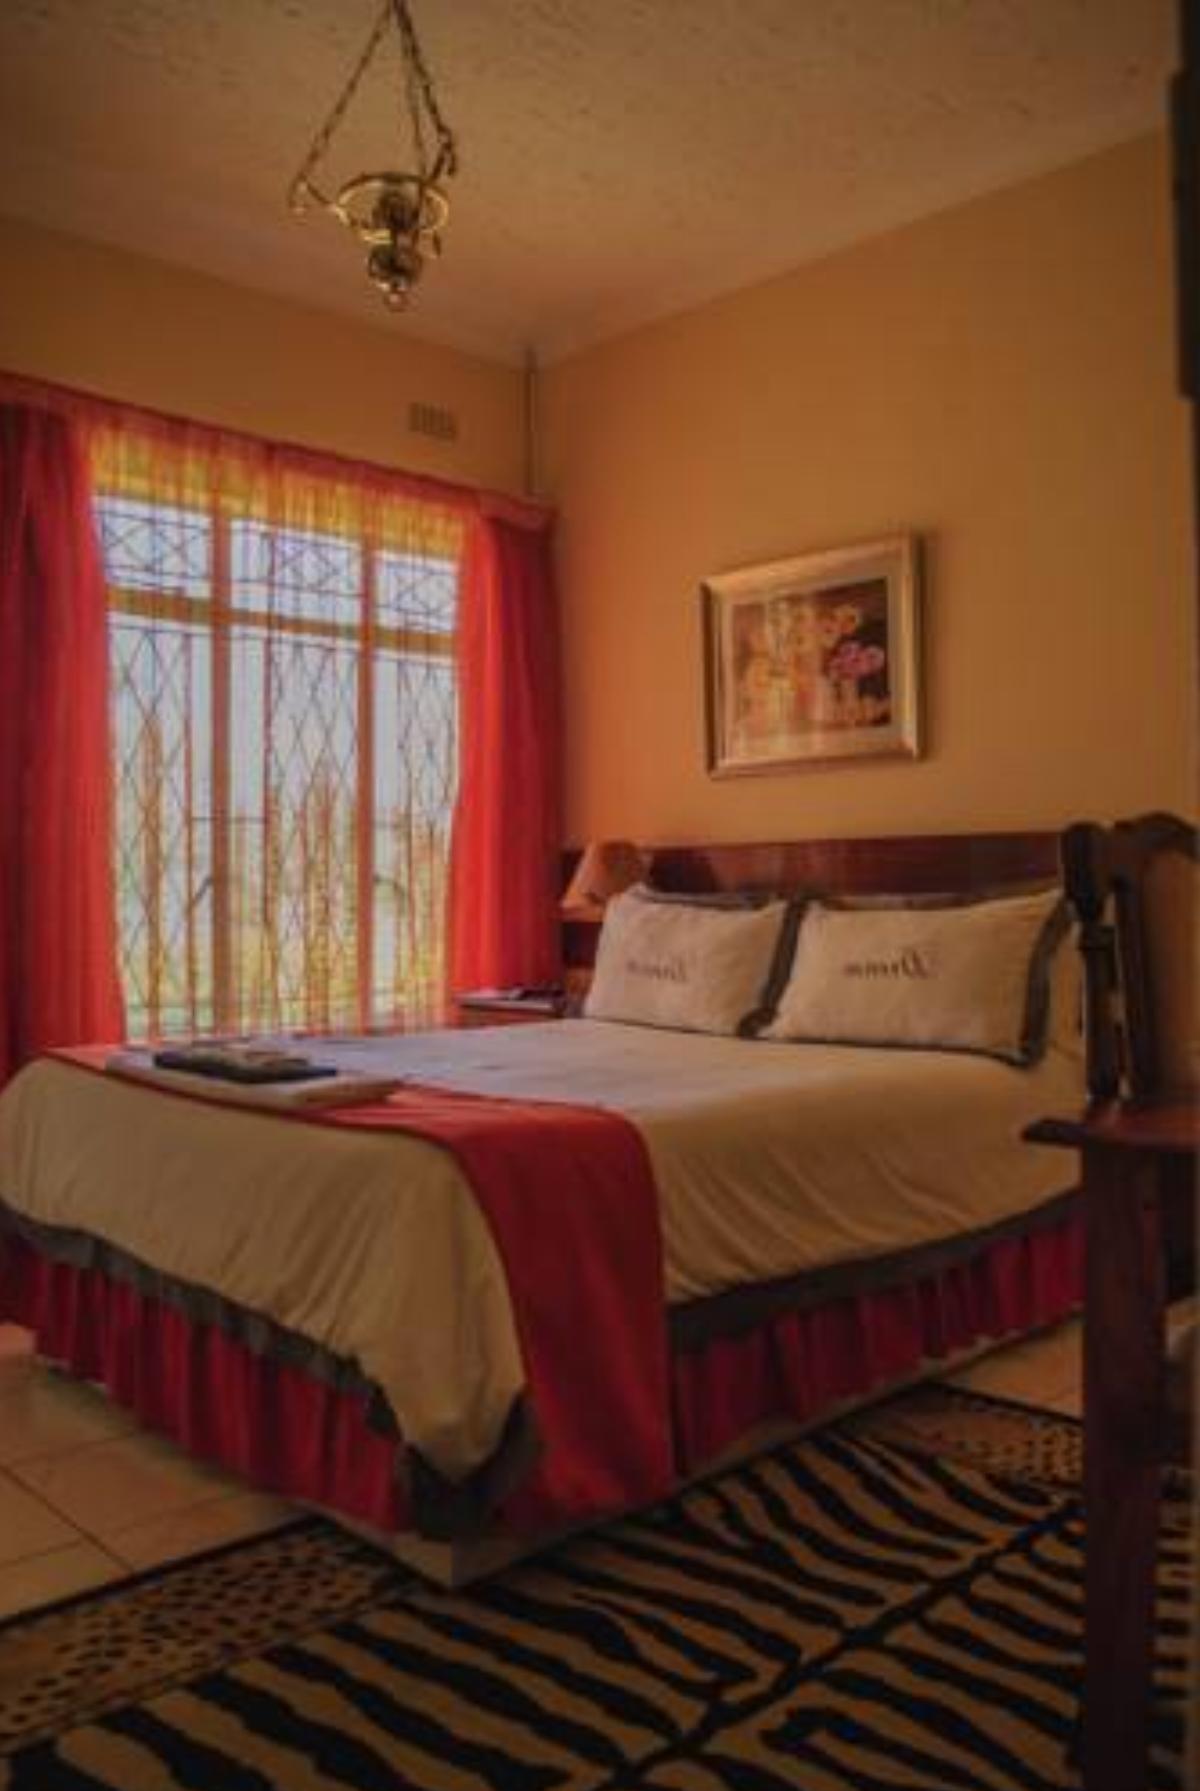 Ebuhleni lodge Hotel Bulawayo Zimbabwe